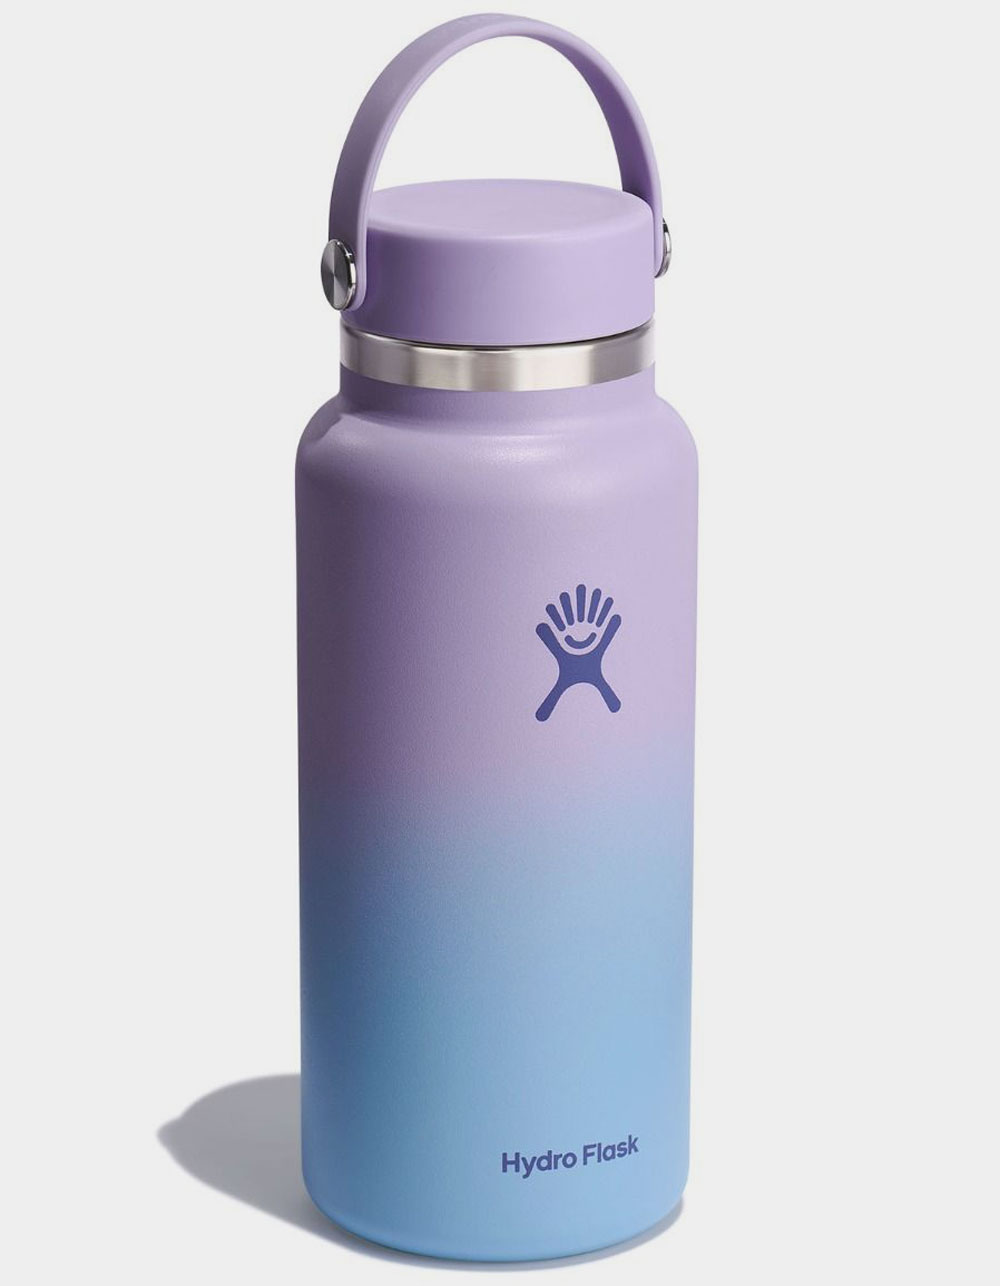 Hydro Flask 32oz Bottle Pastel Butterflies Purple on Black